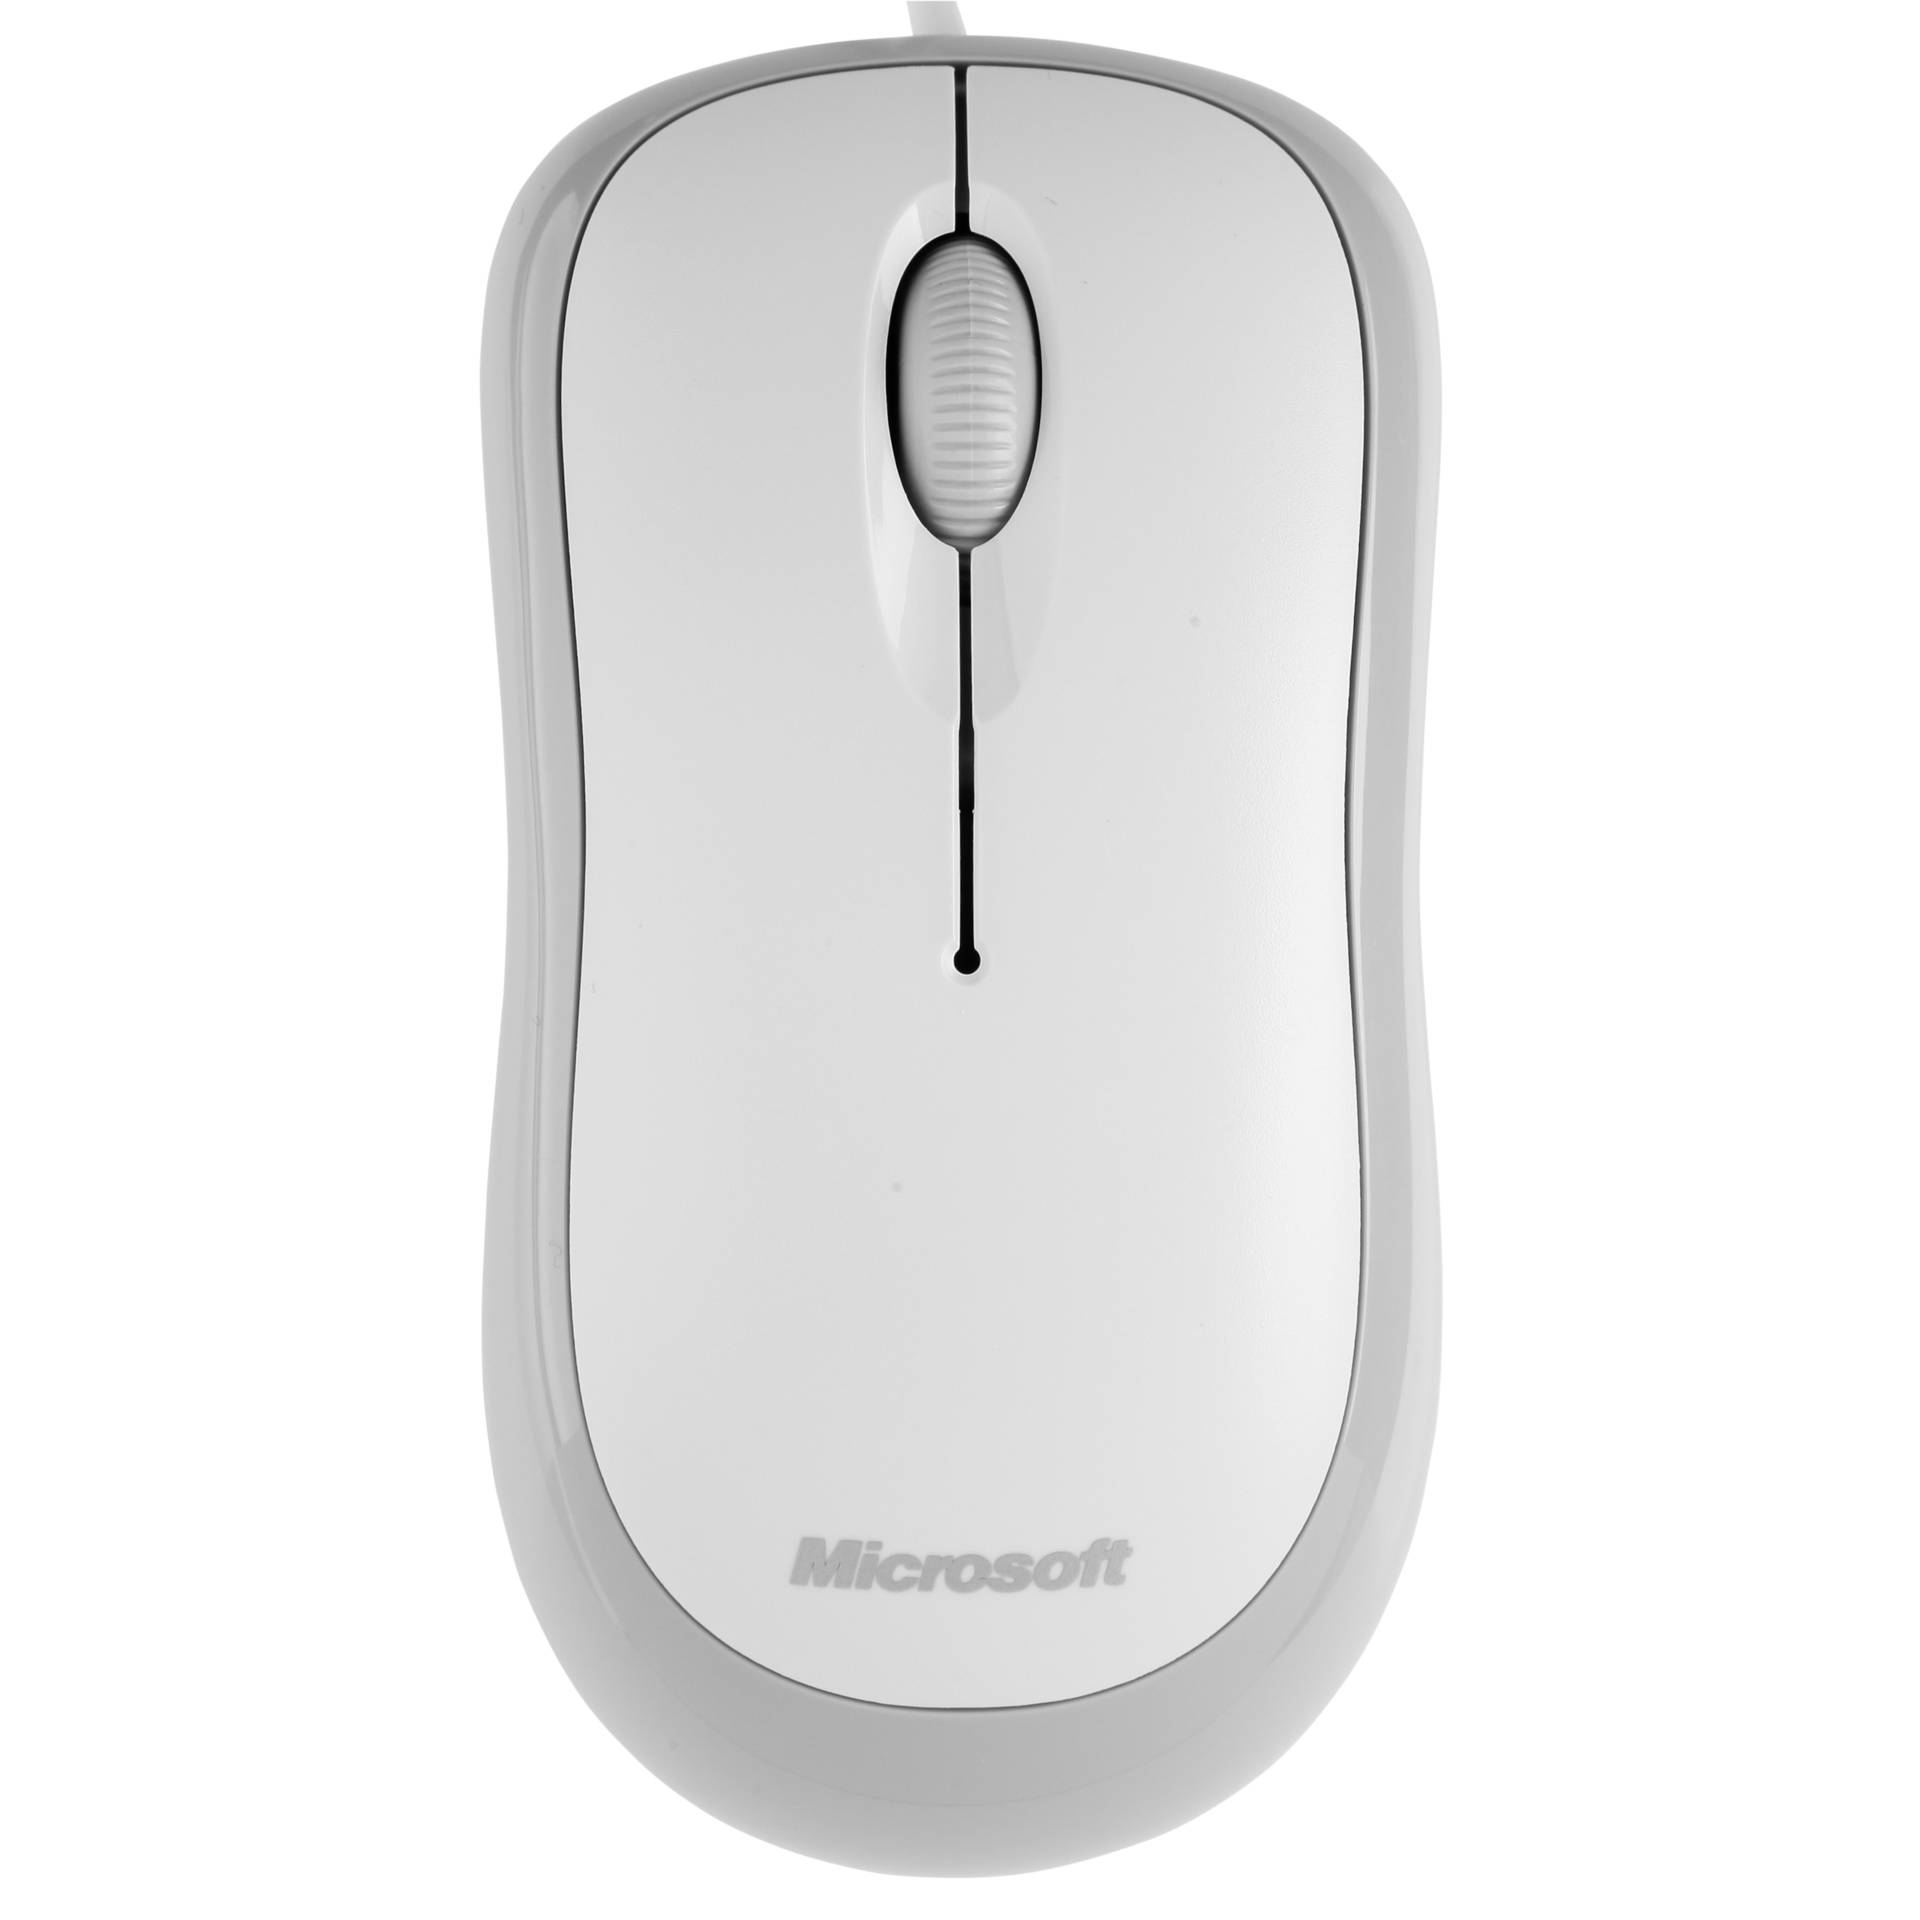 Microsoft Basic Optical Mouse v2.0 weiß, Maus, beidhändig, kabelgebunden (1.8m), USB